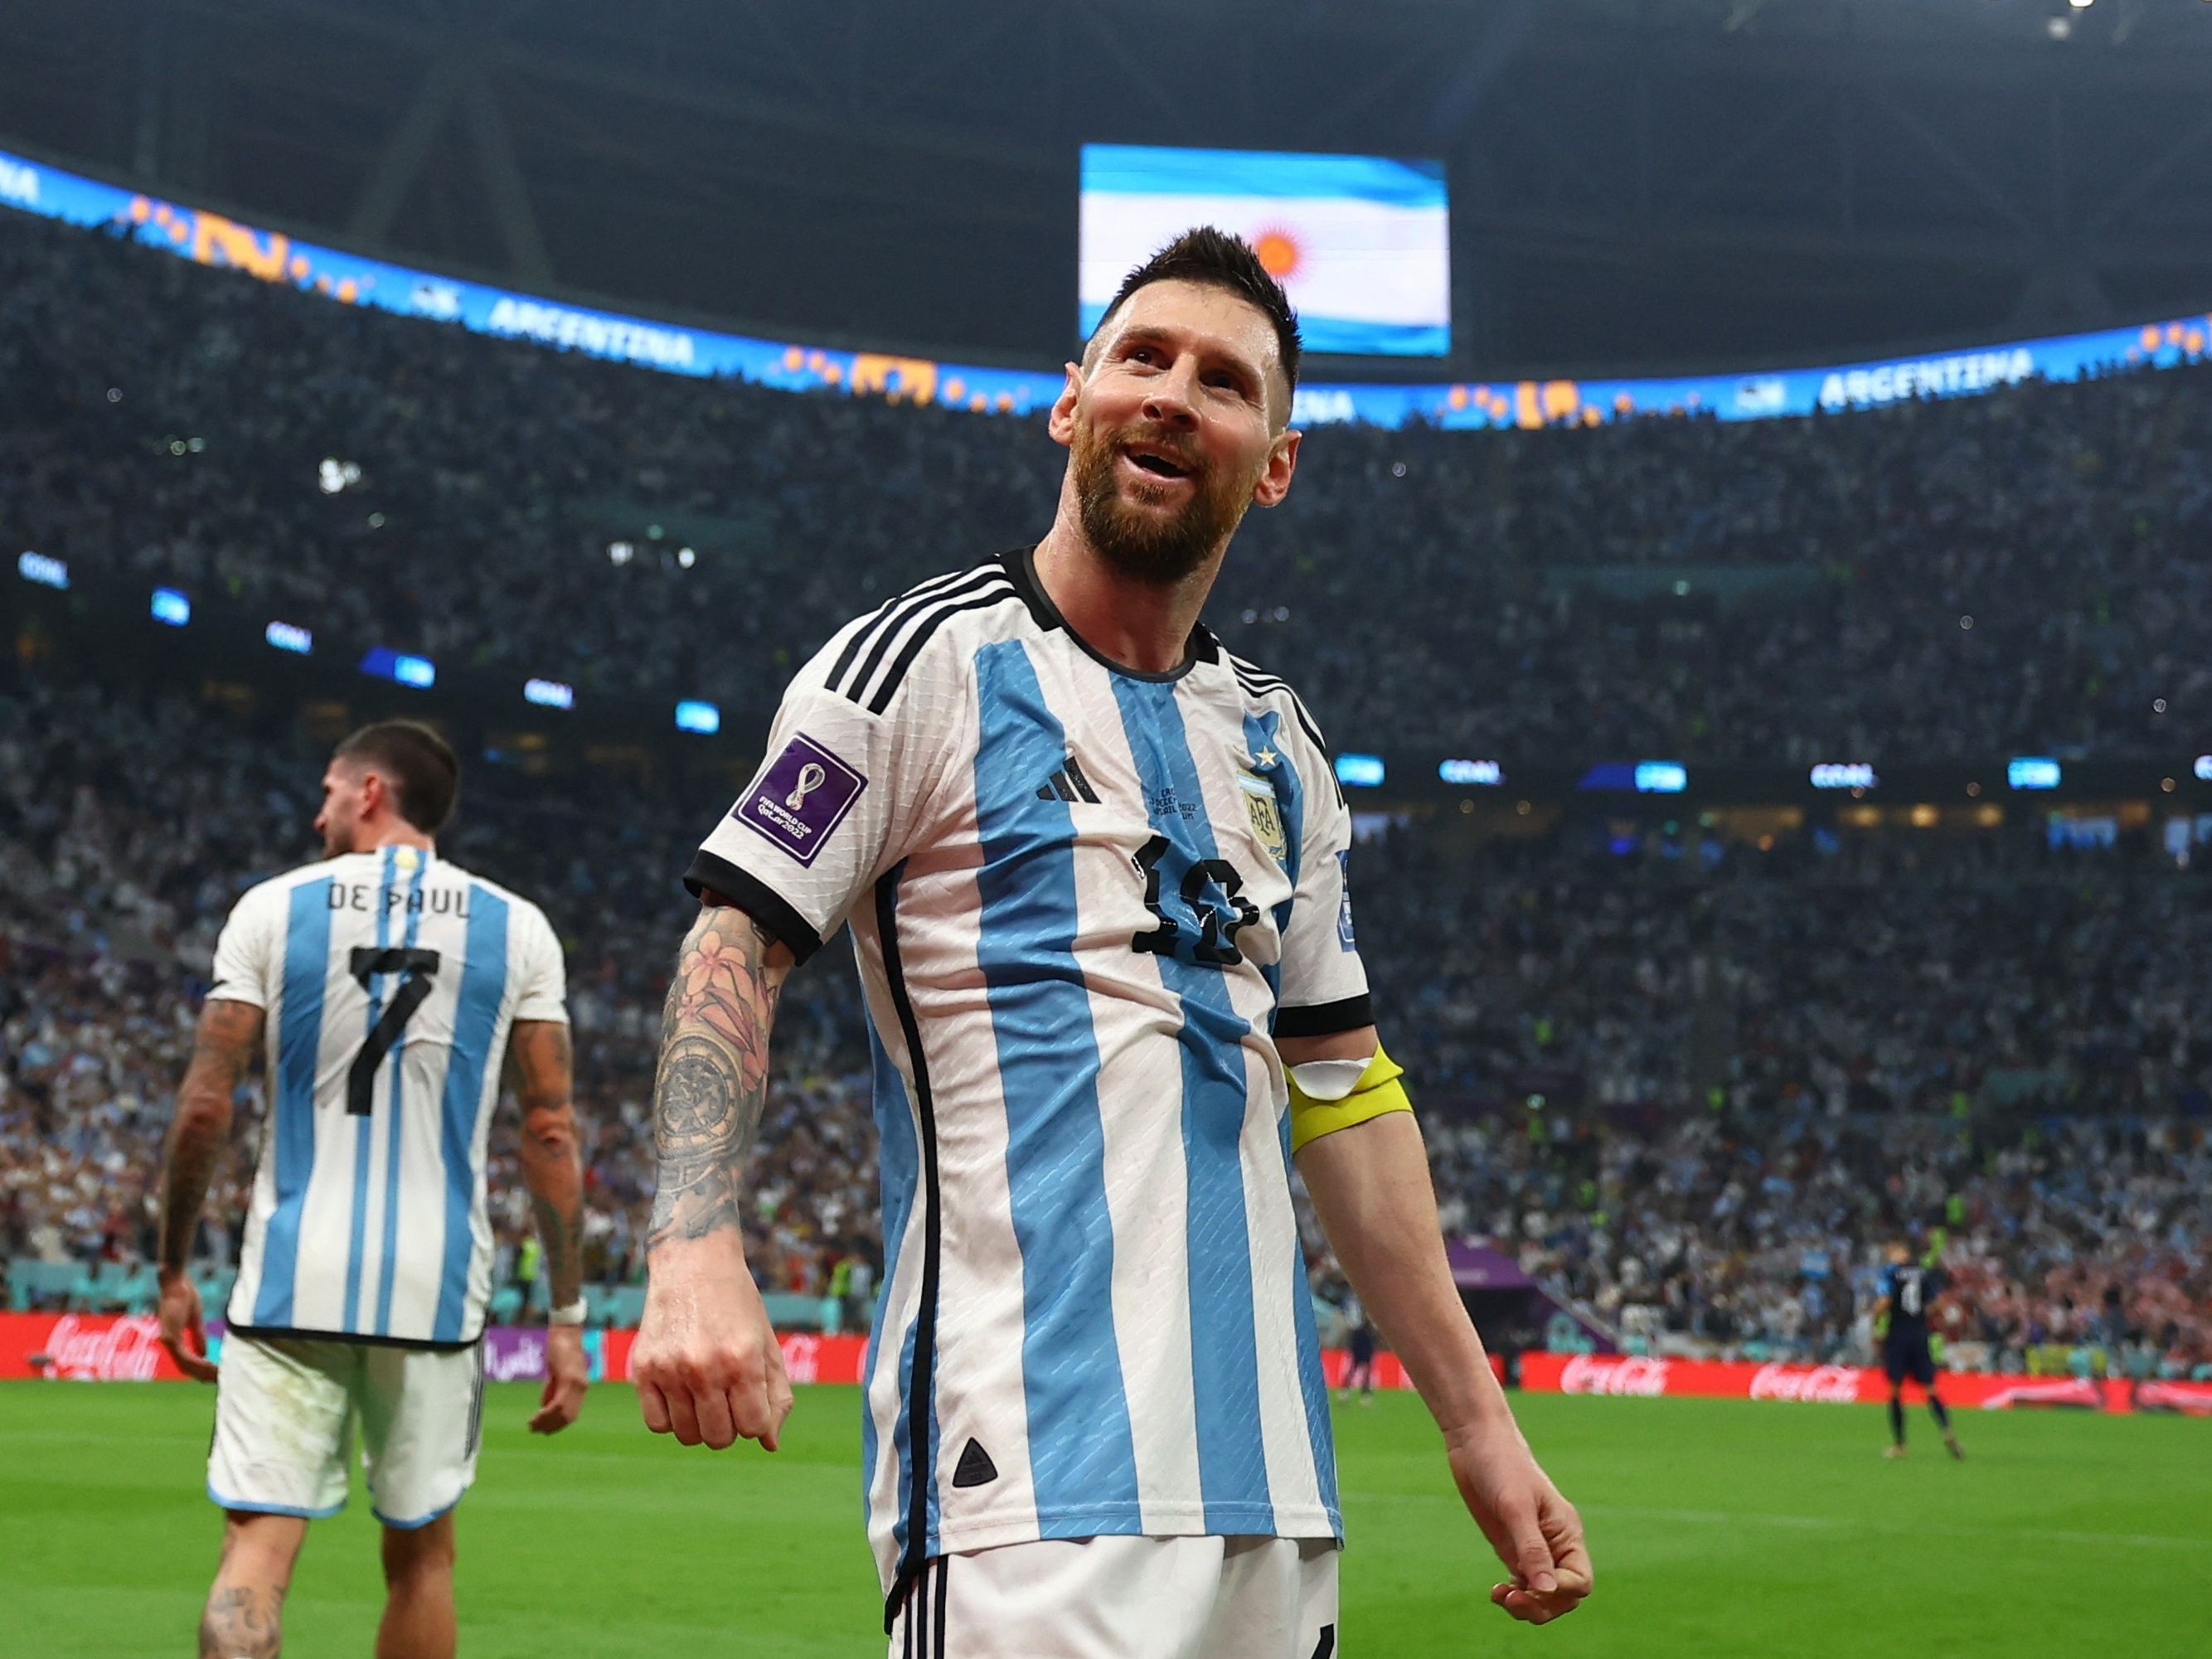 Copa do Mundo 2022: o que diz música pop que virou 'hino' da Argentina no  torneio - 15/12/2022 - UOL Splash